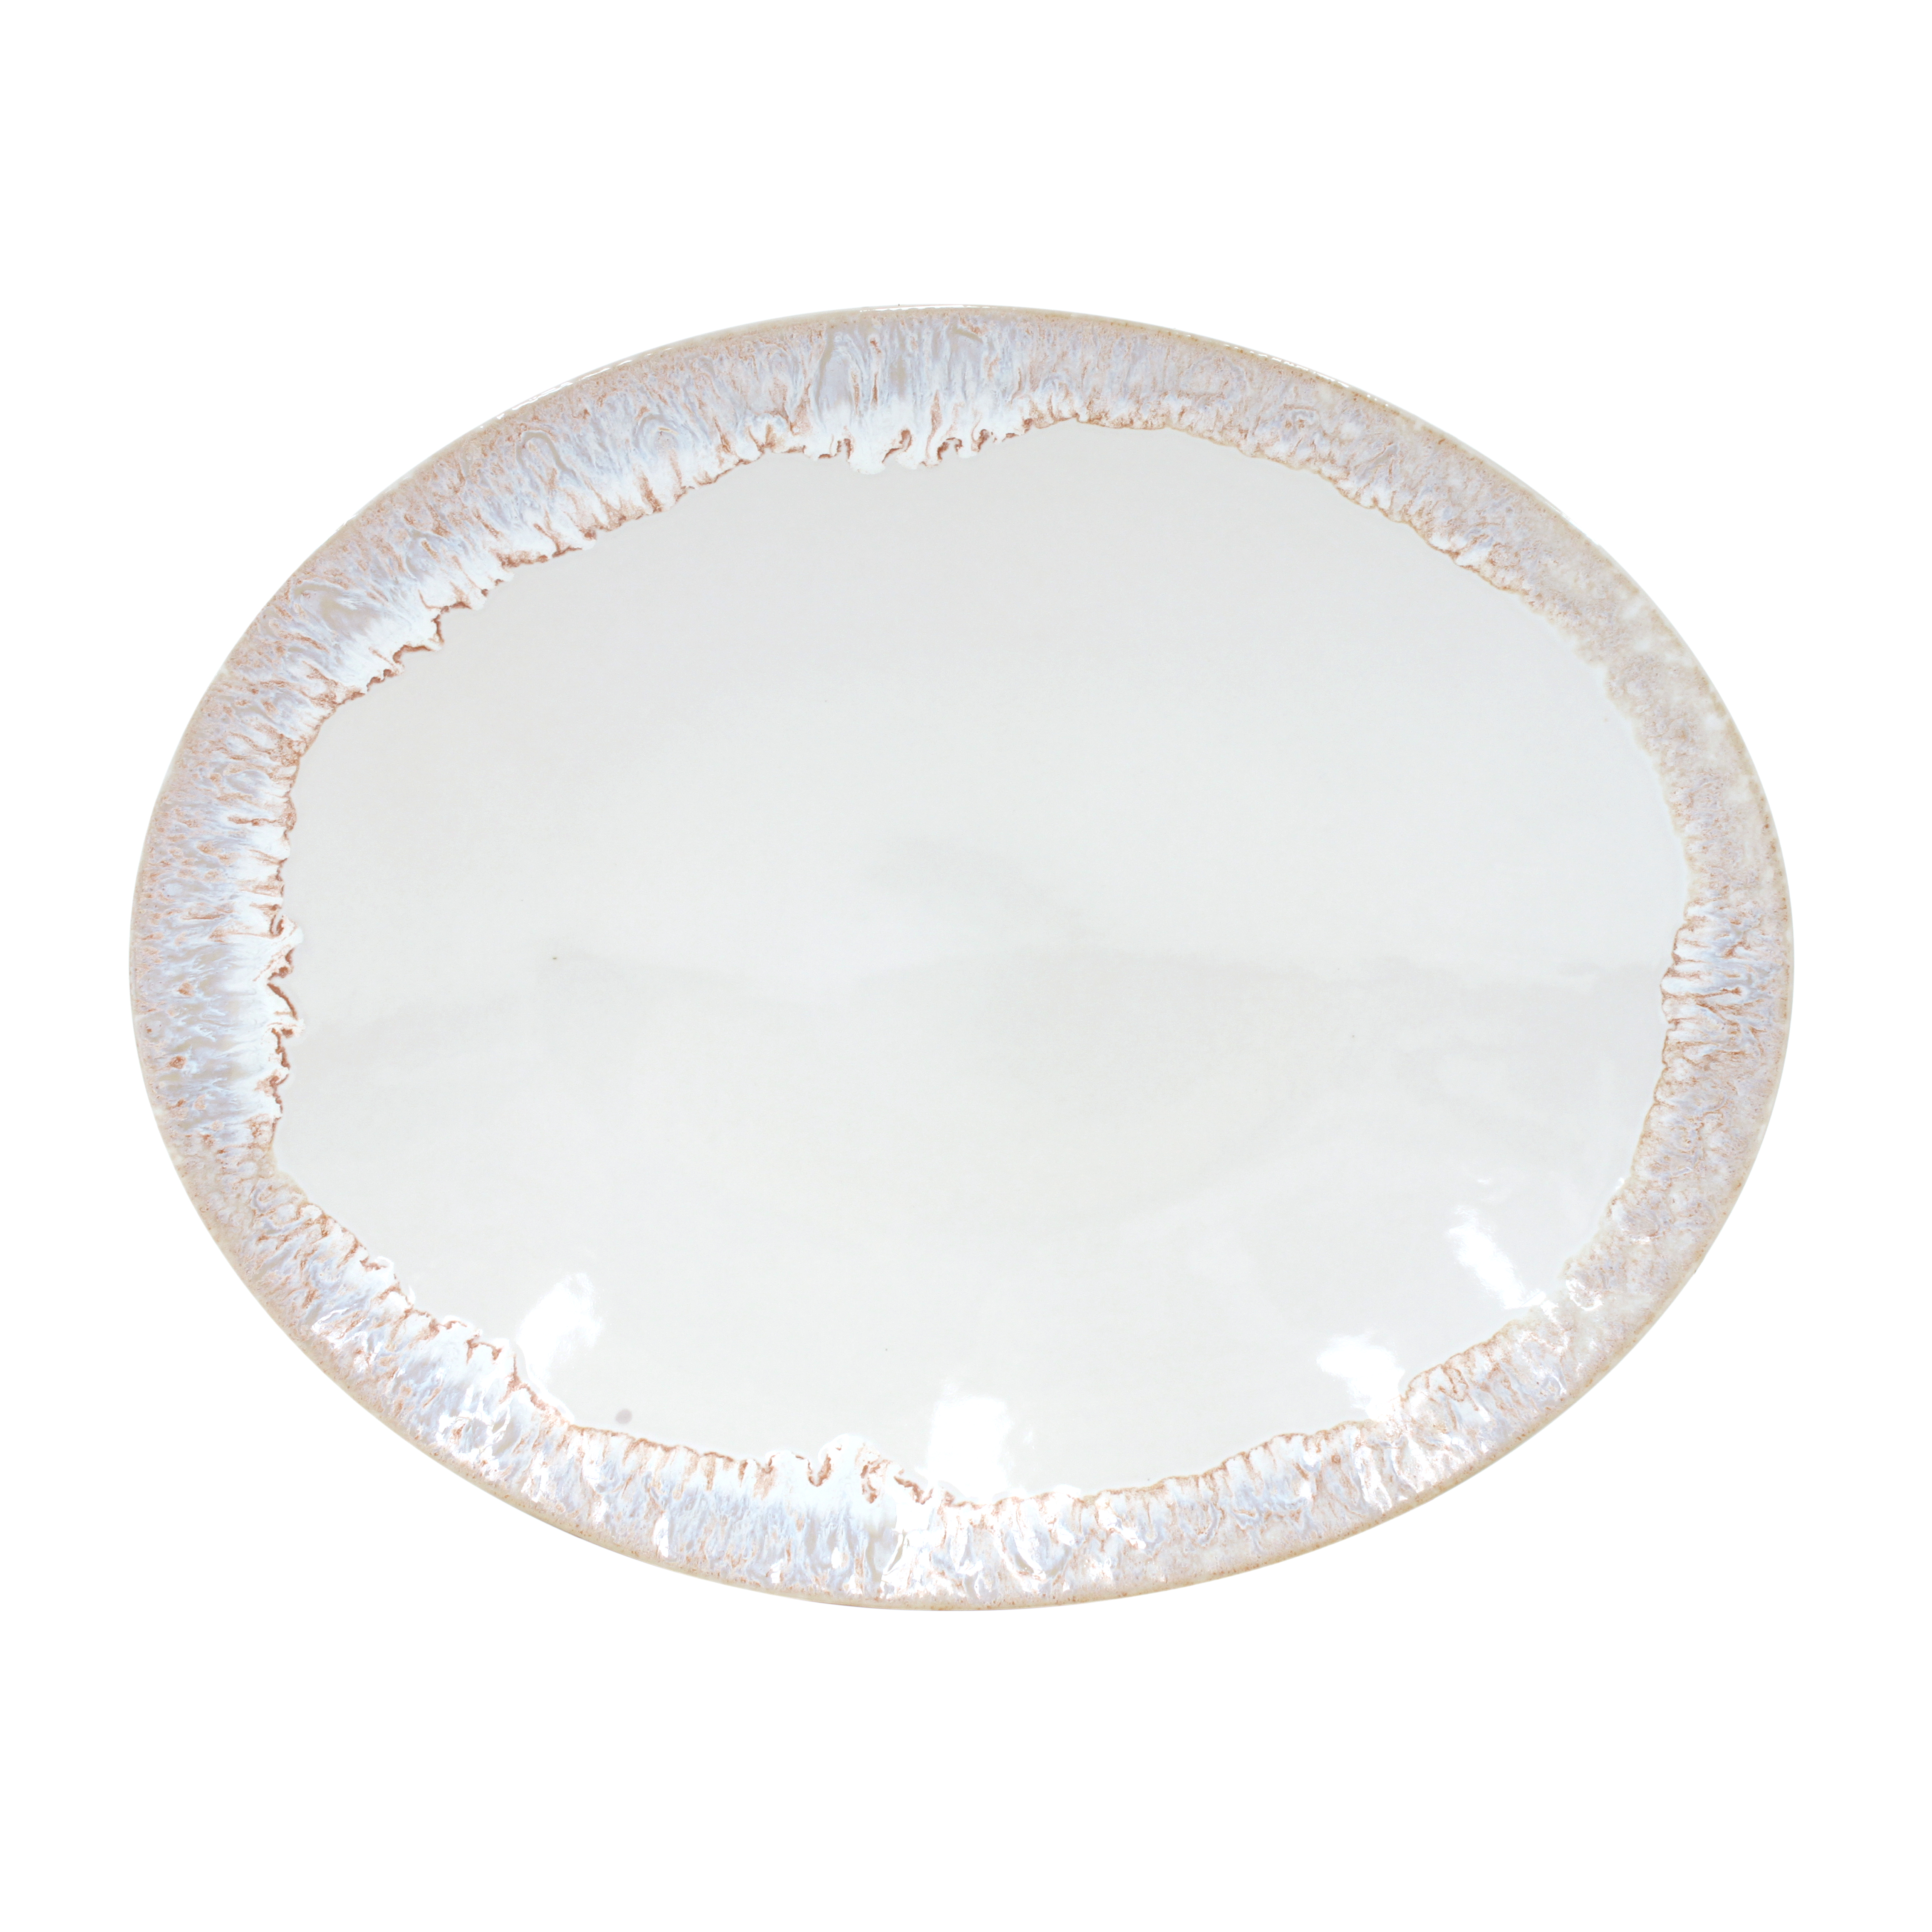 Taormina White Oval Platter 41.3cm Gift